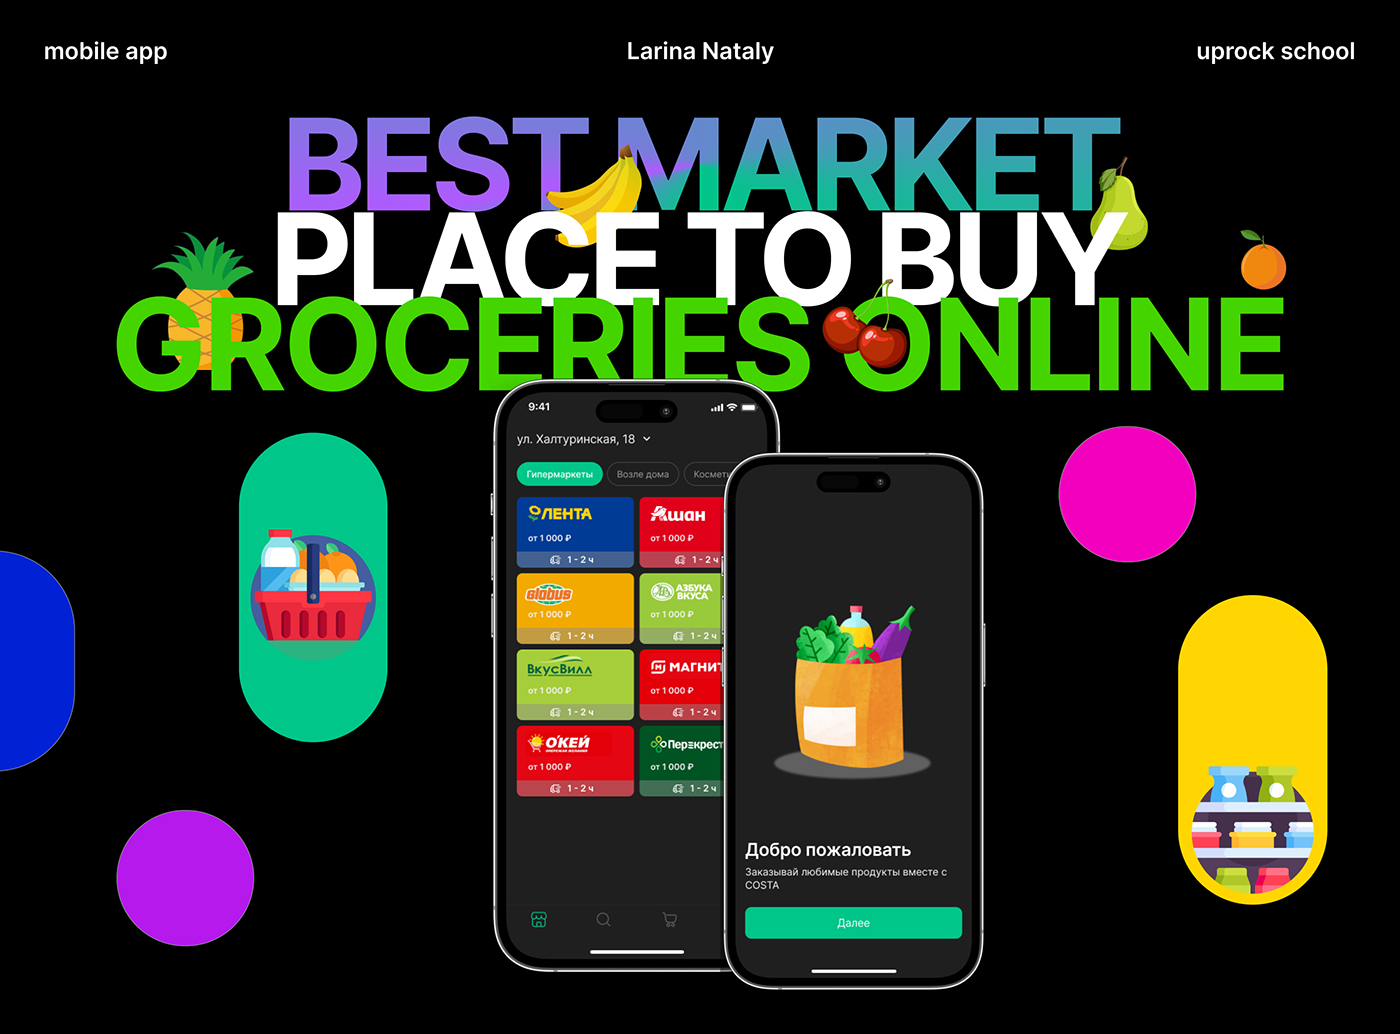 mobile app design mobile design app design Marketplace маркетплейс мо моильный дизайн приложение